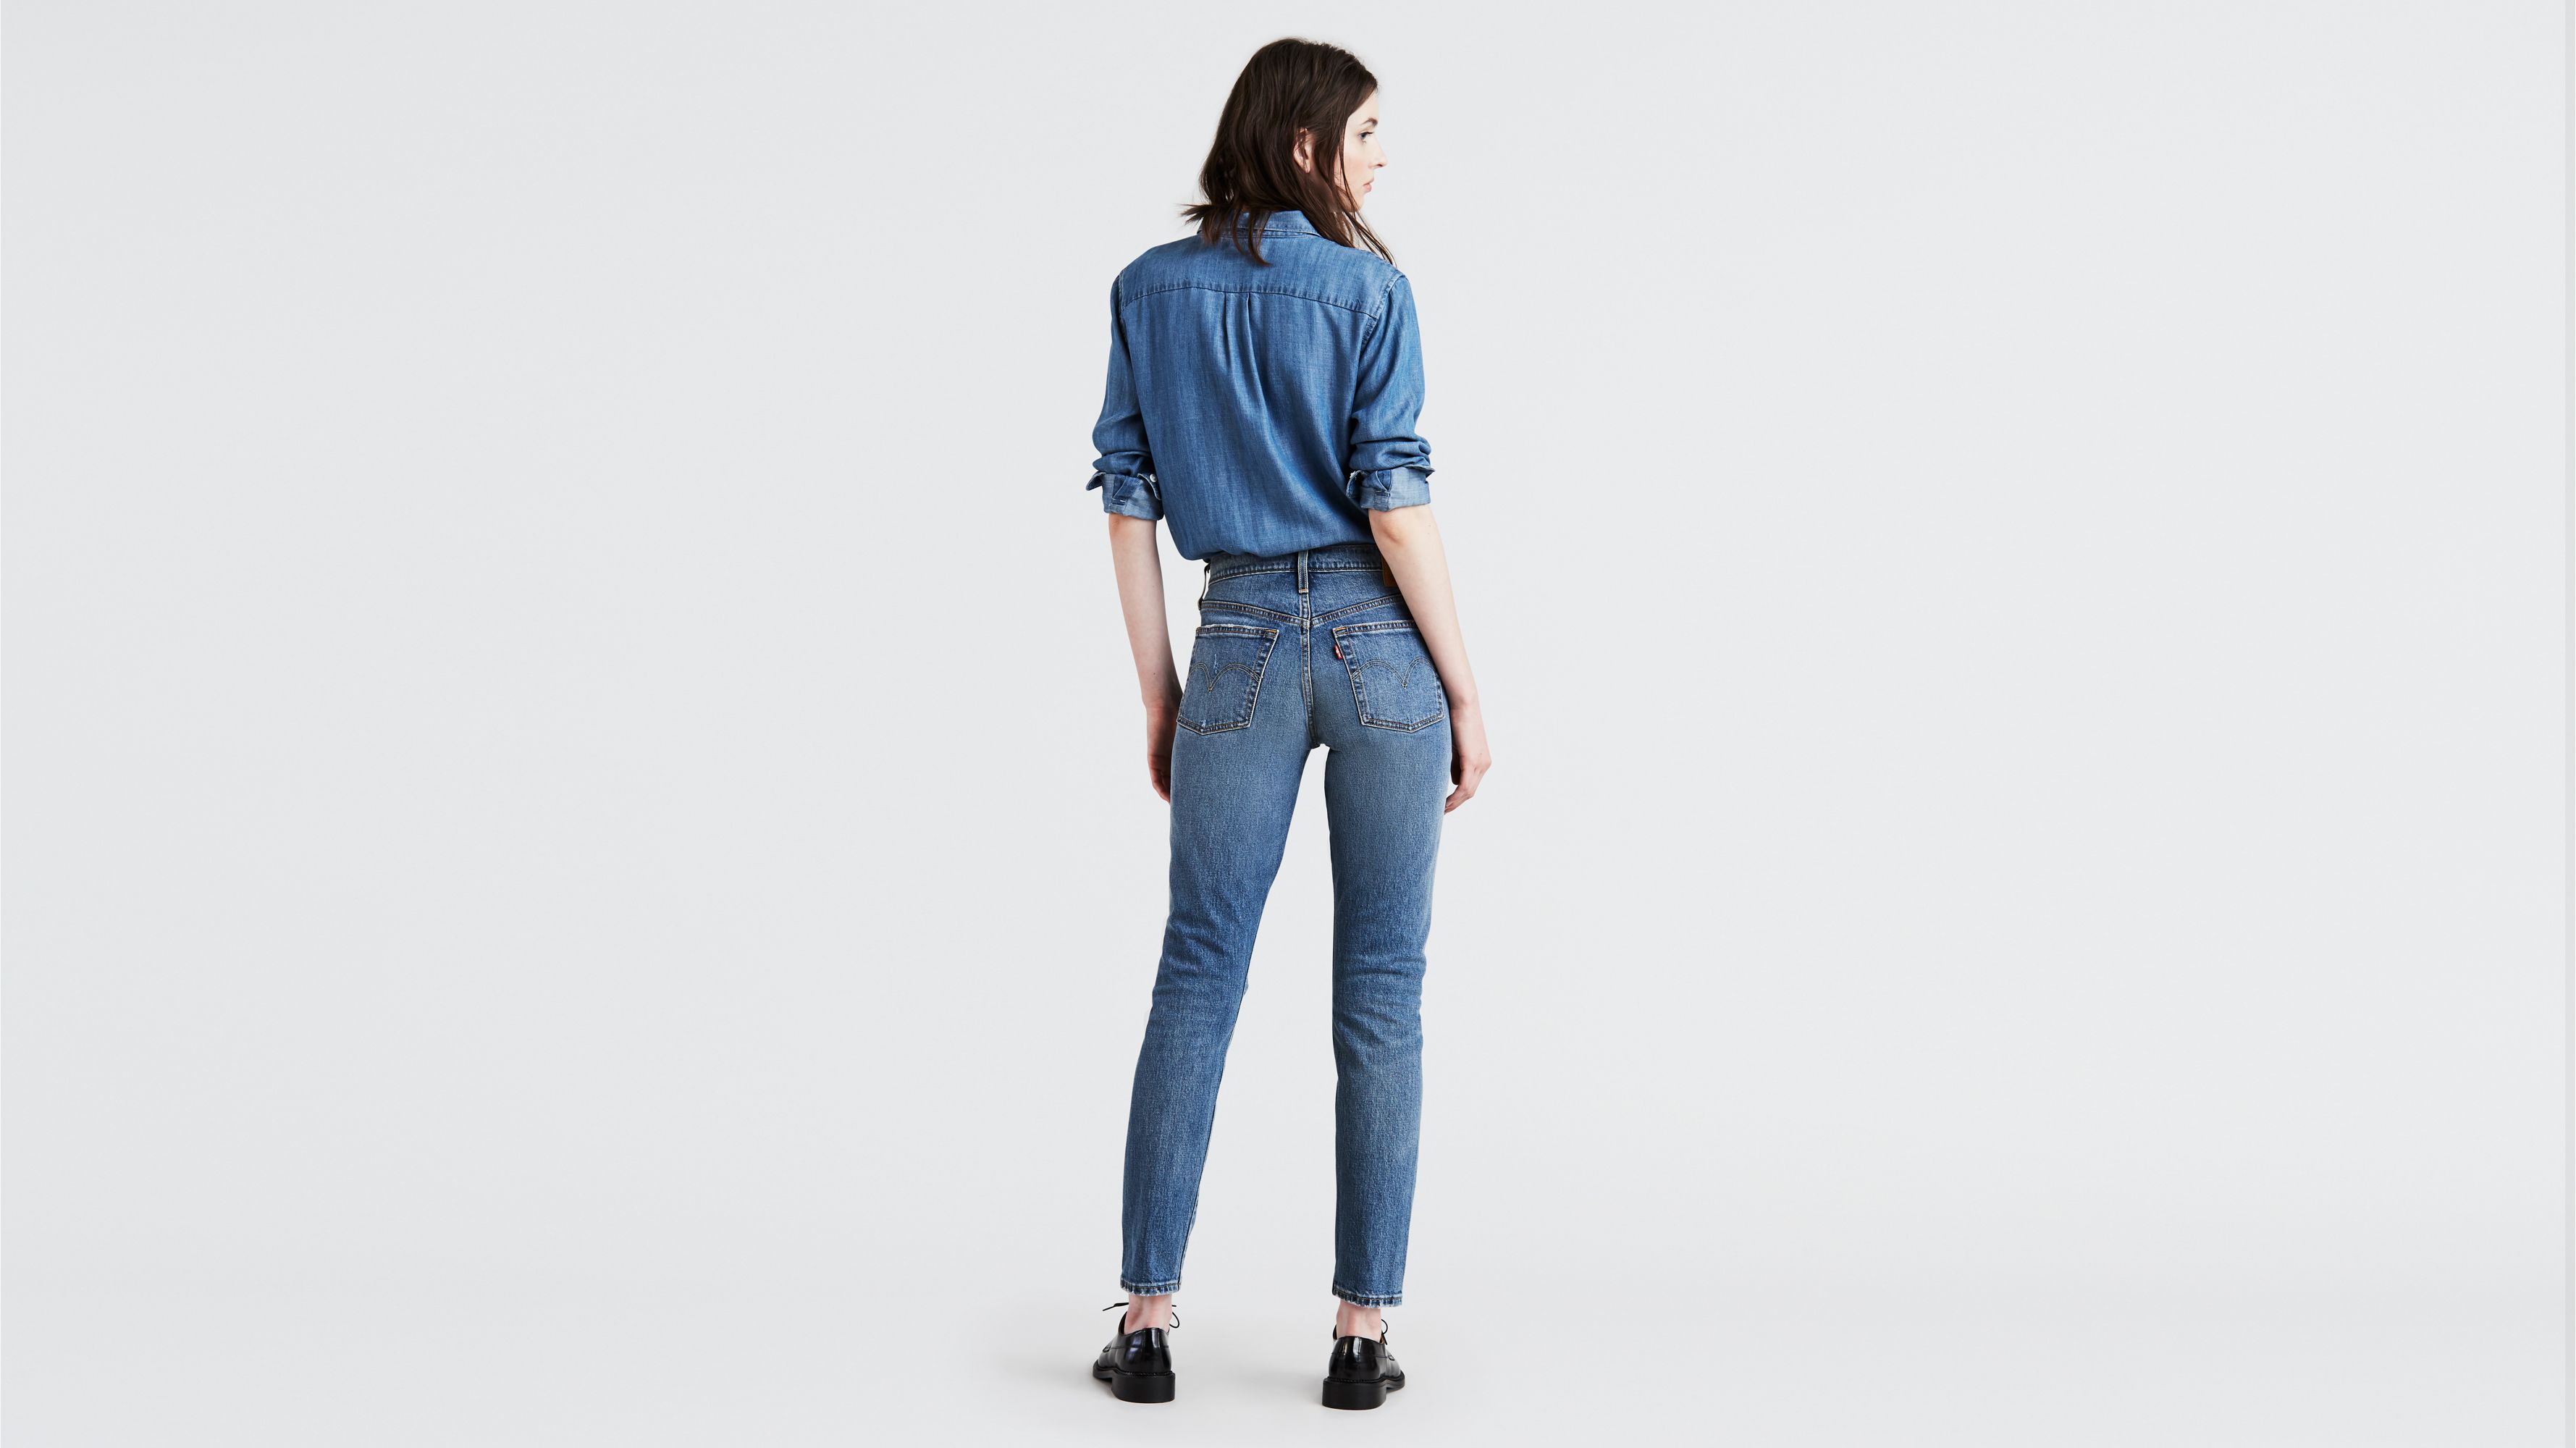 levis s40197 jeans